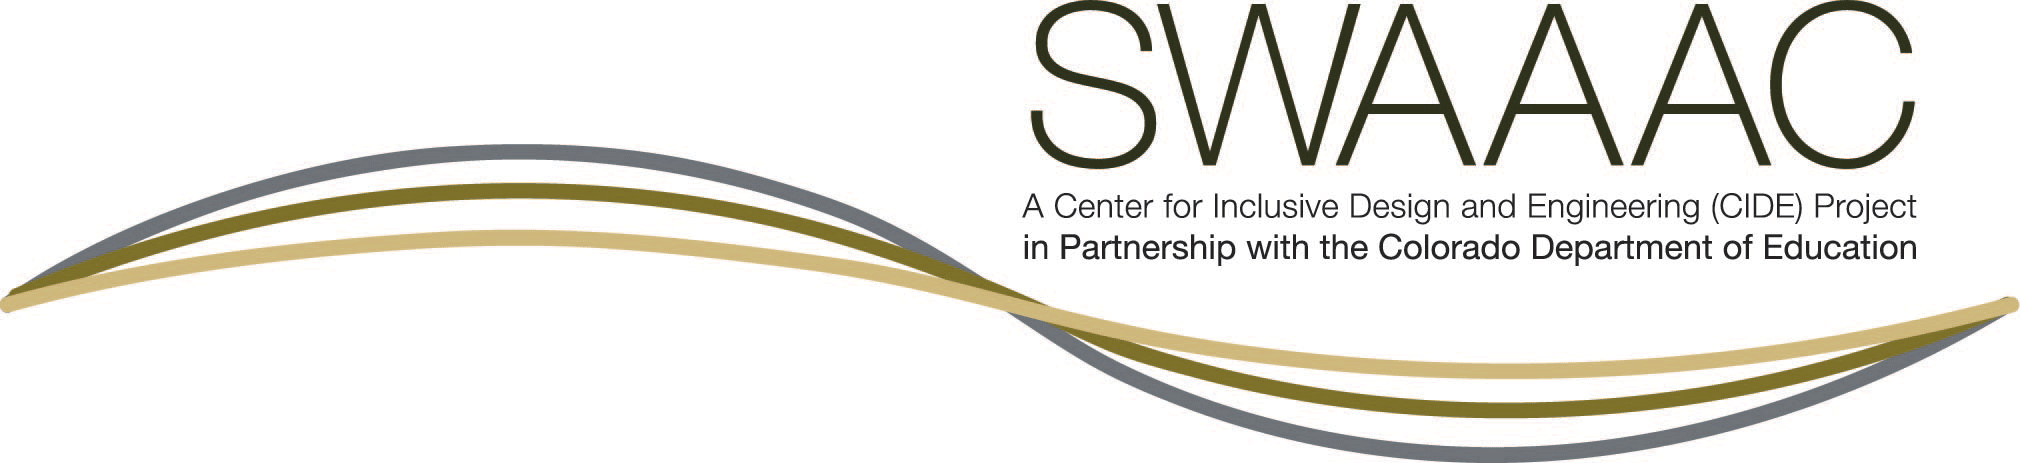 SWAAAC Logo